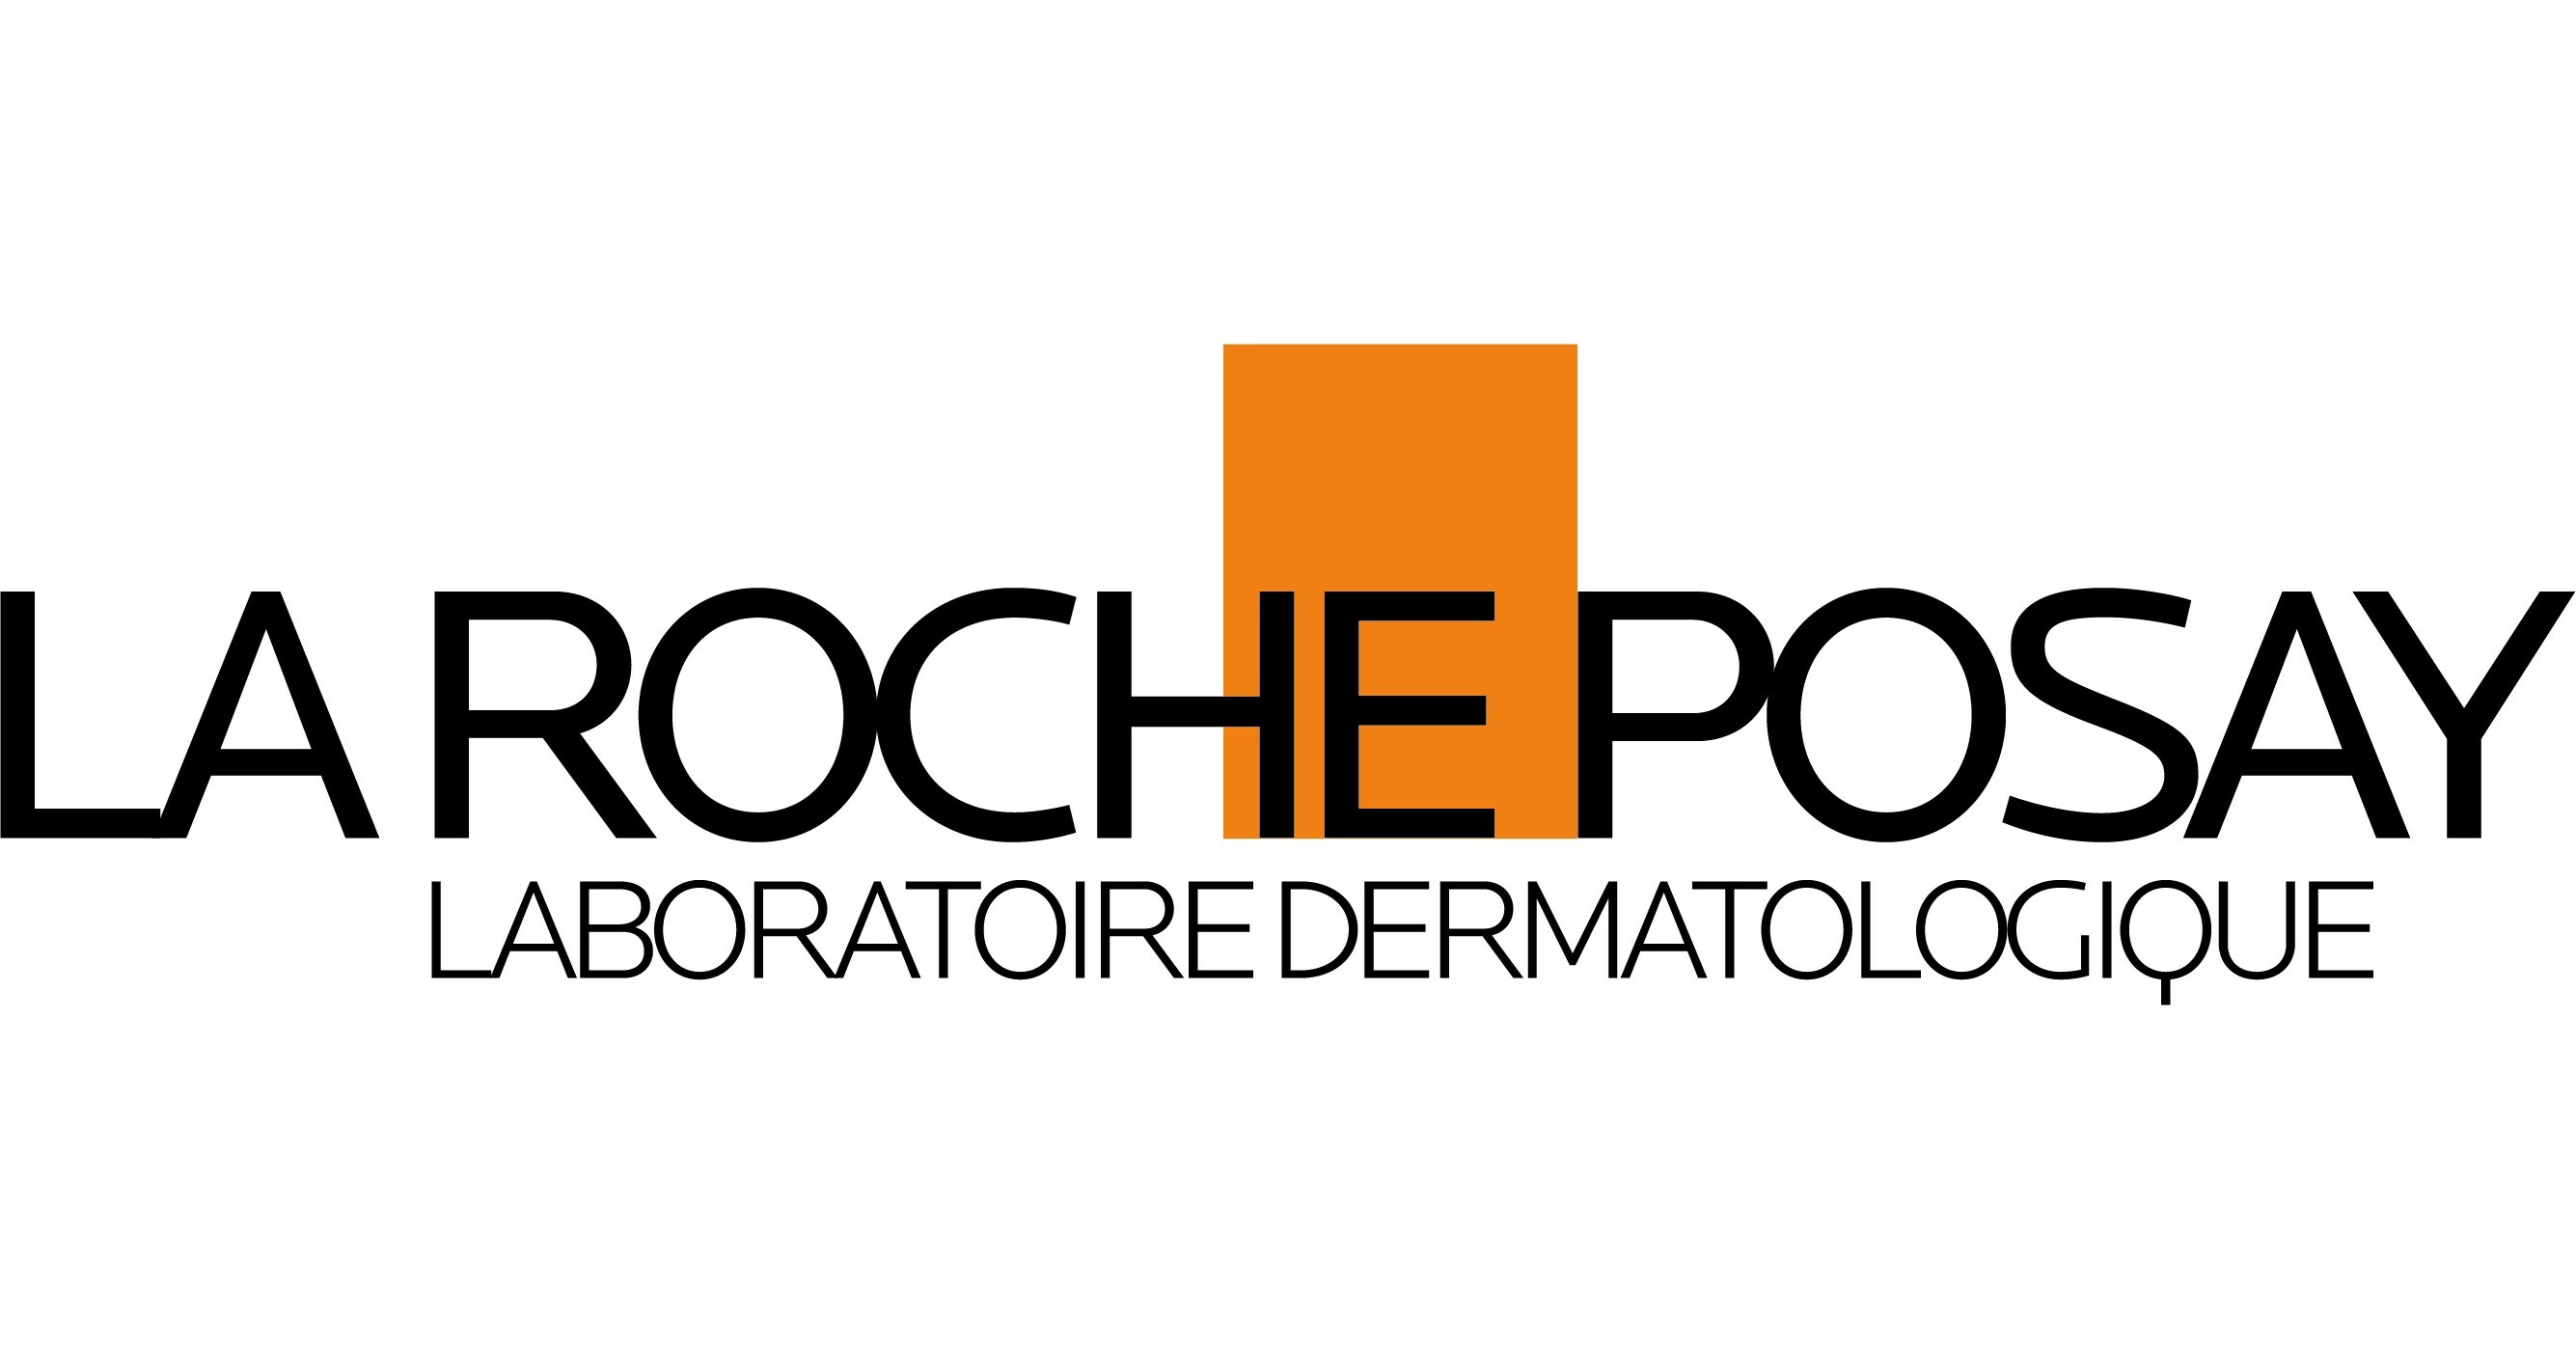 لاروش پوزای - La Roche Posay